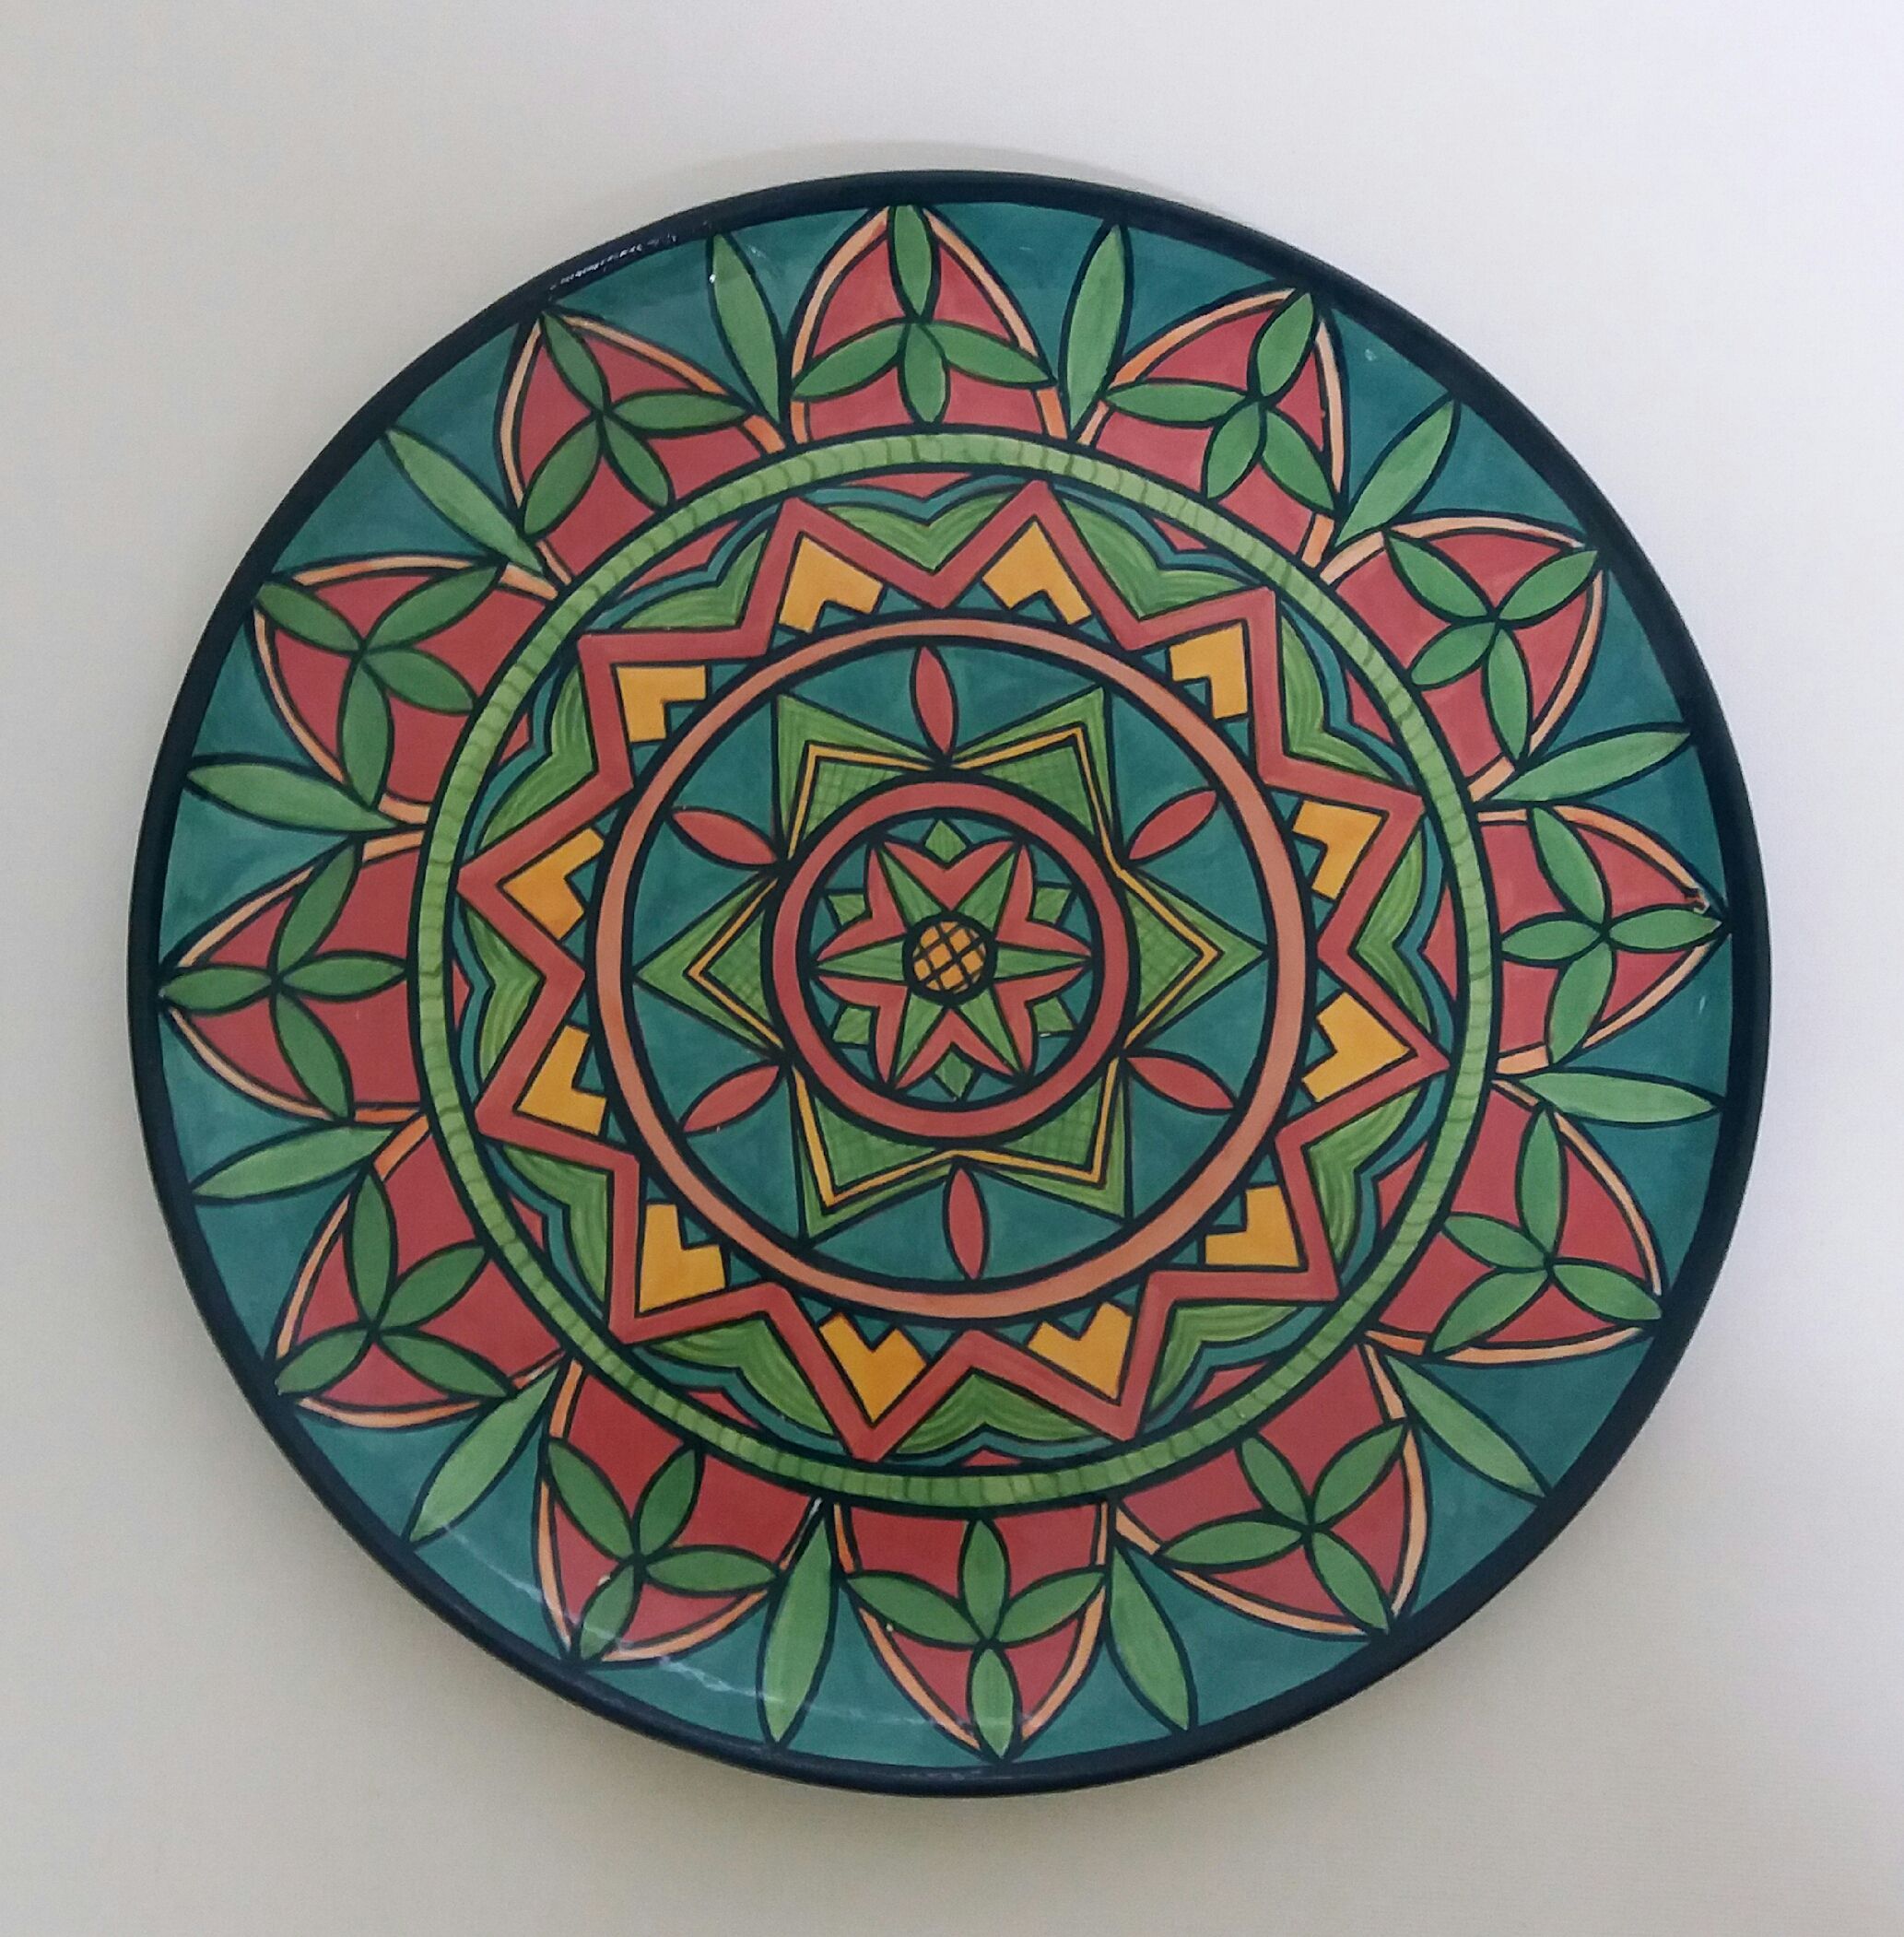 Prato de cerâmica pintado a mão com desenho de mandala - https